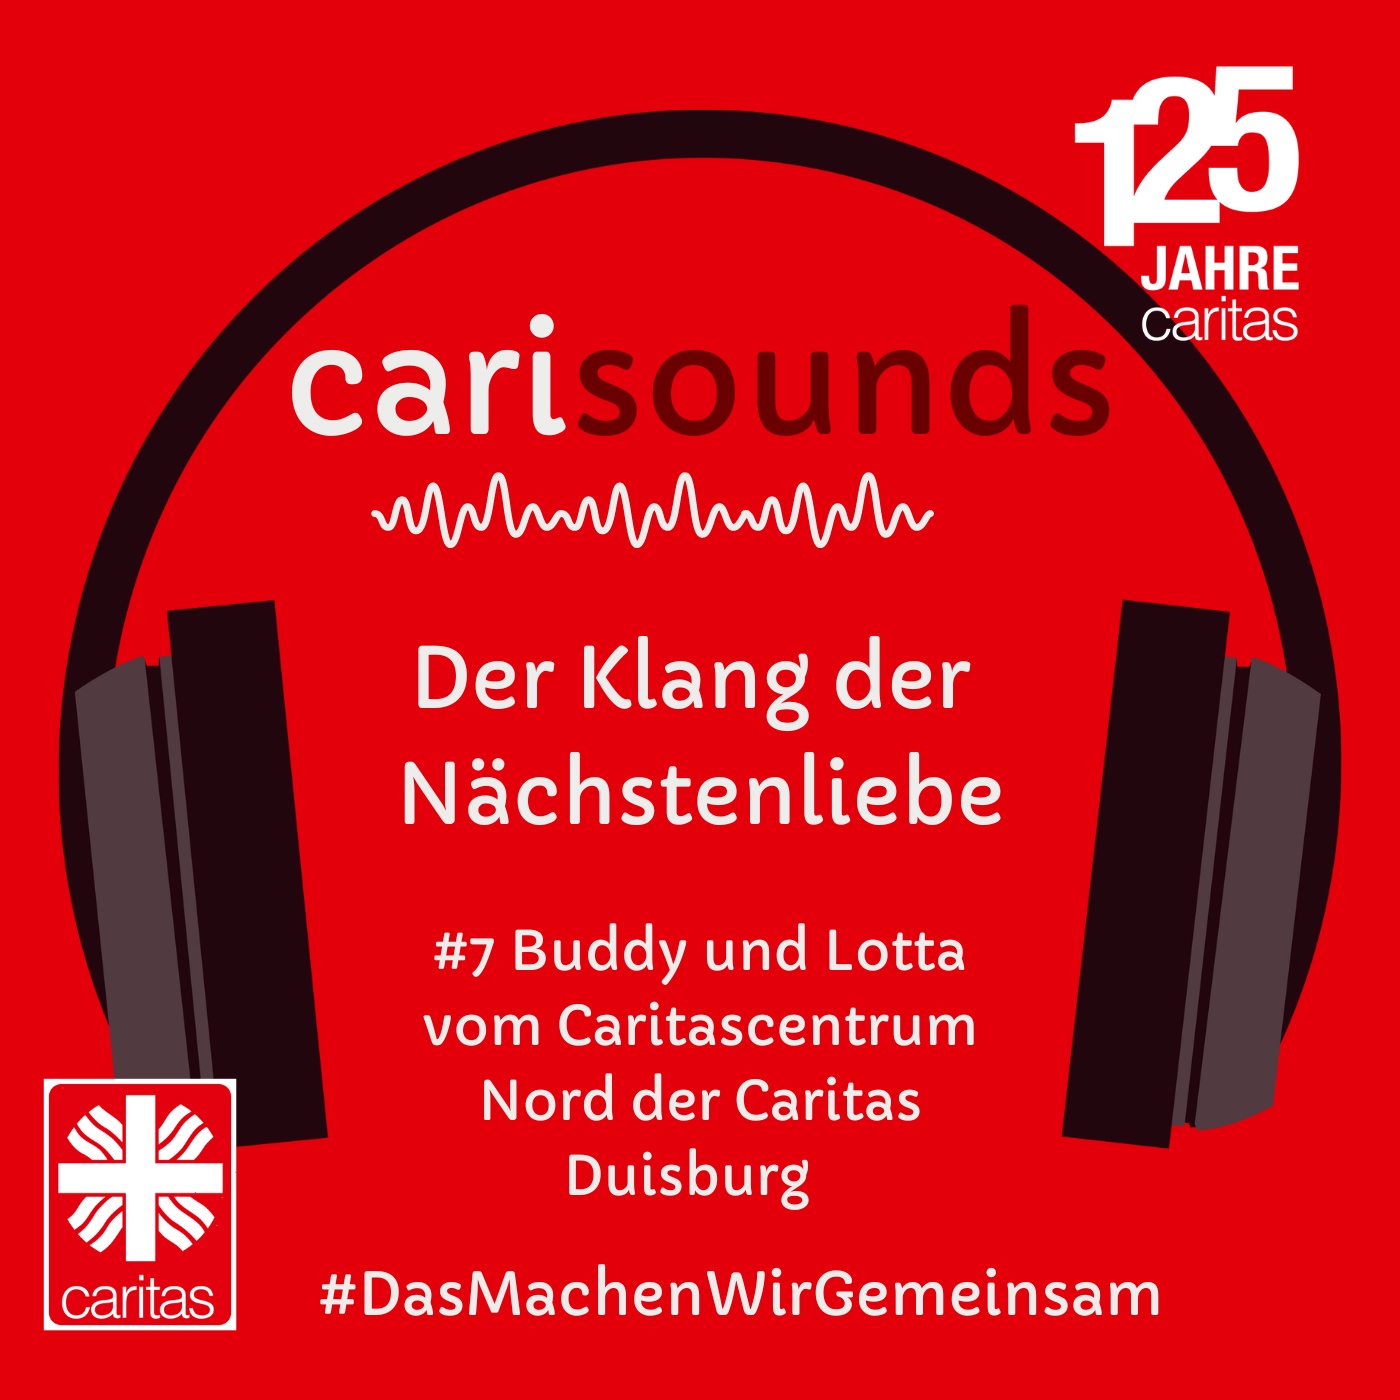 #7 carisounds - Der Klang der Nächstenliebe - Buddy und Lotta vom Caritascentrum Nord in Duisburg